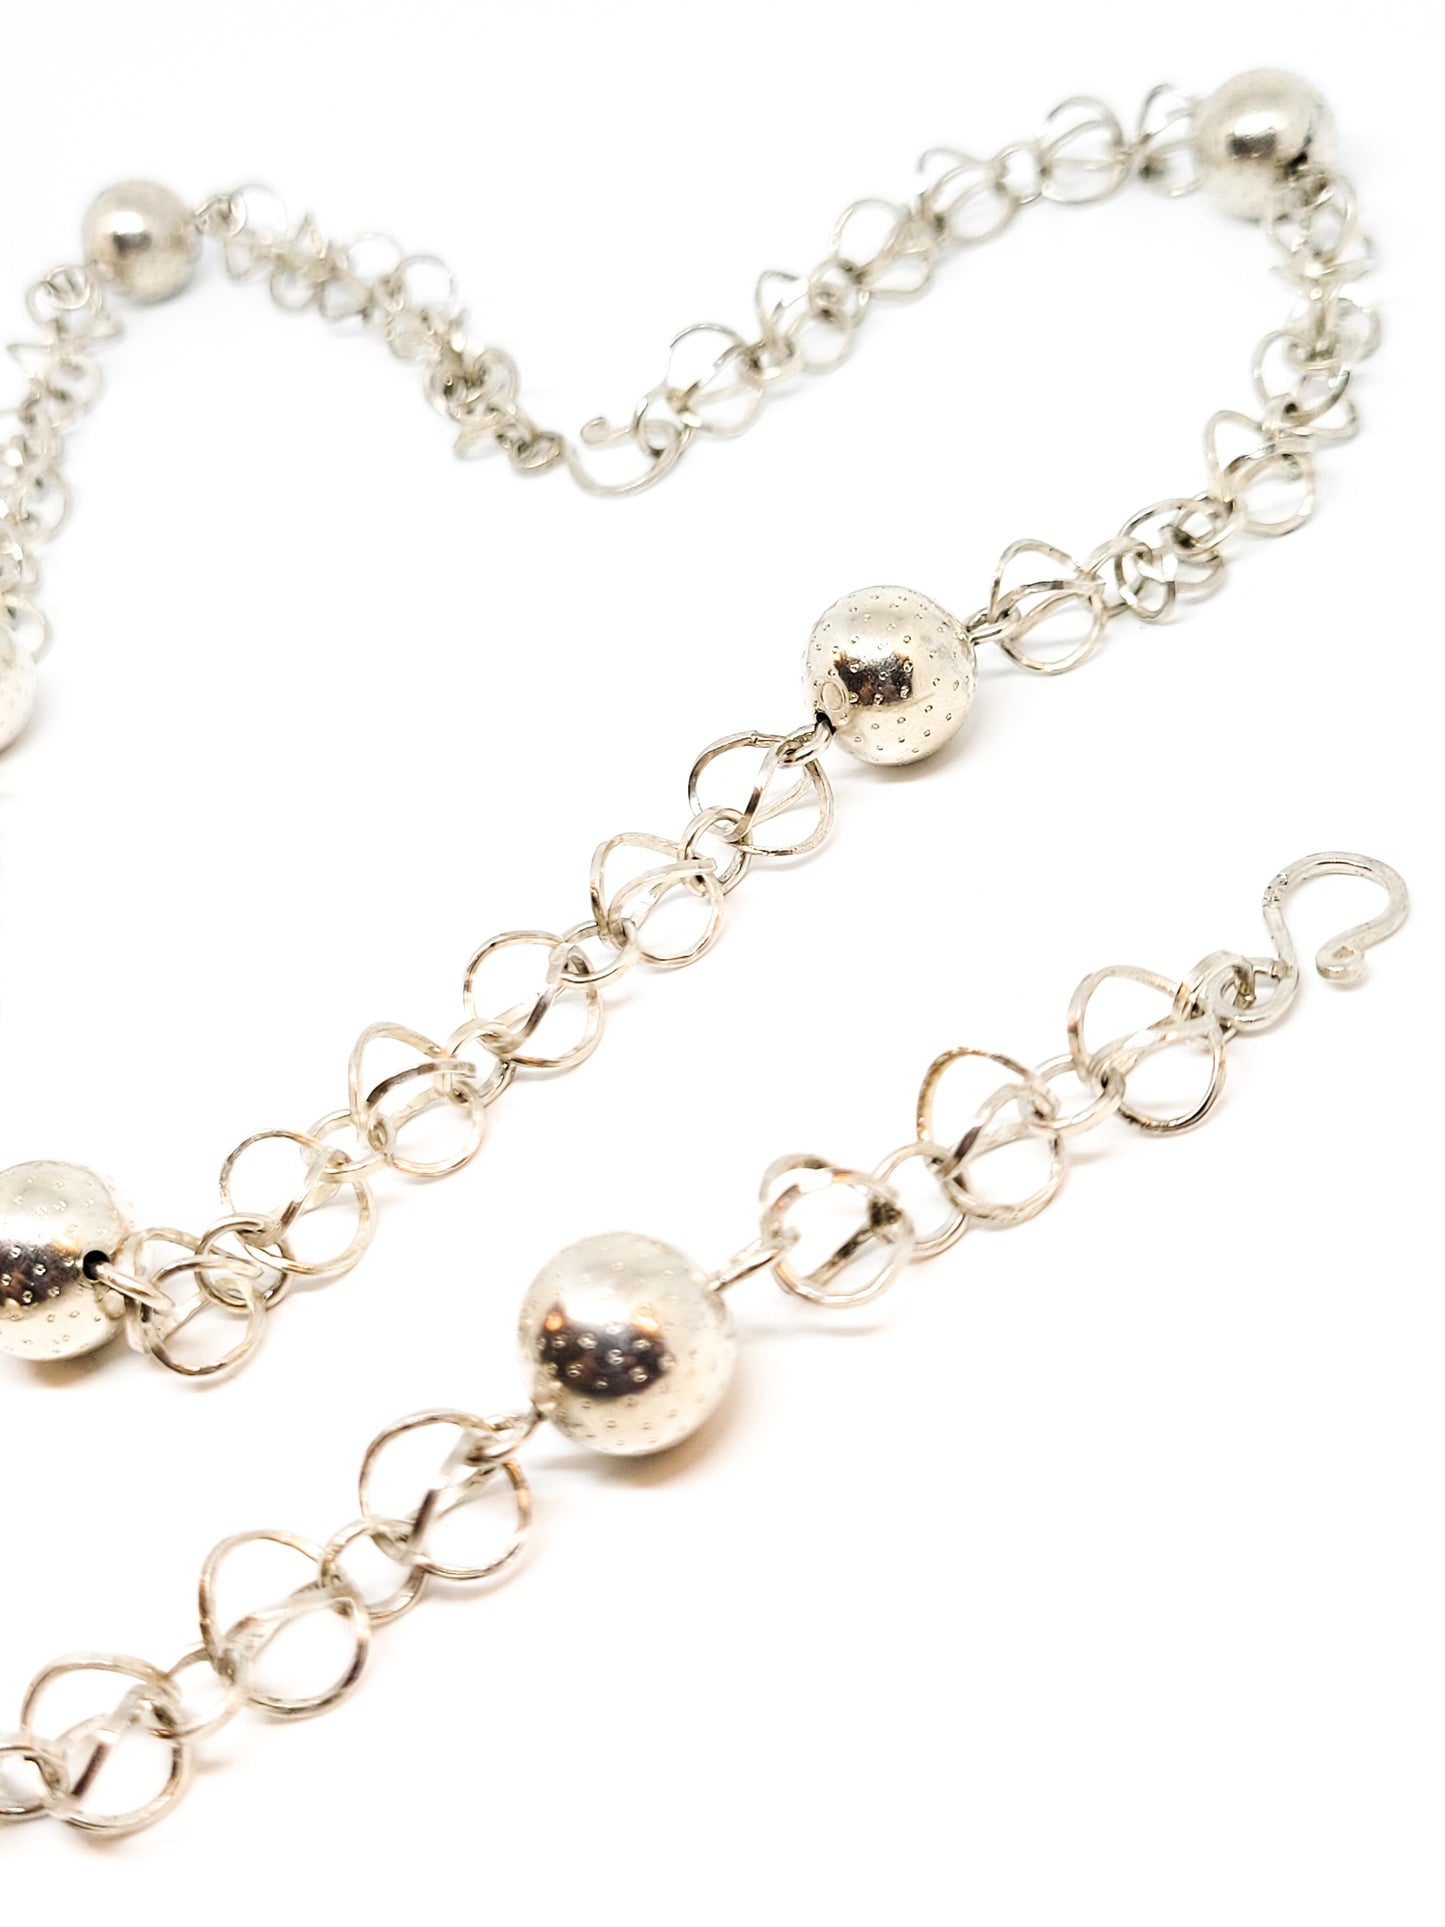 German Modernist link 835 sterling silver vintage necklace and bracelet set